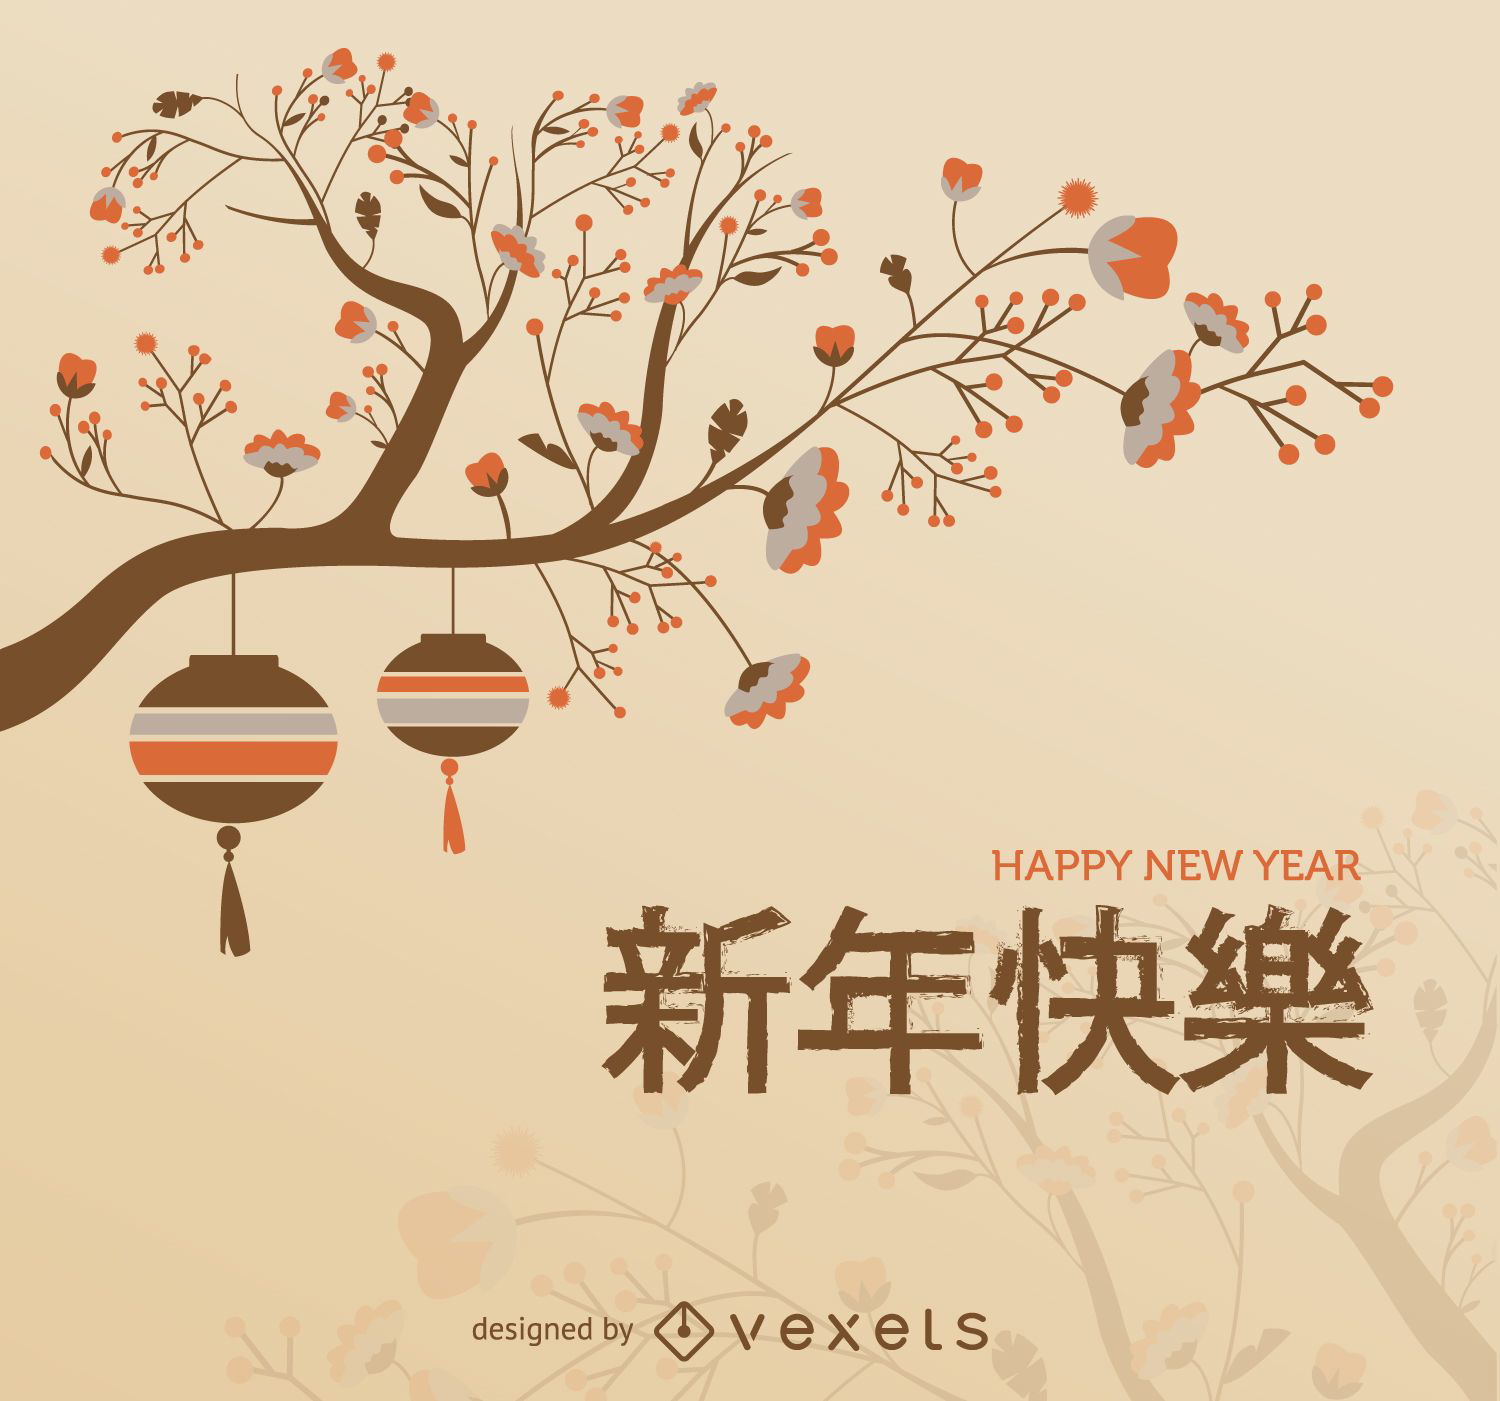 Galho de árvore do ano novo chinês